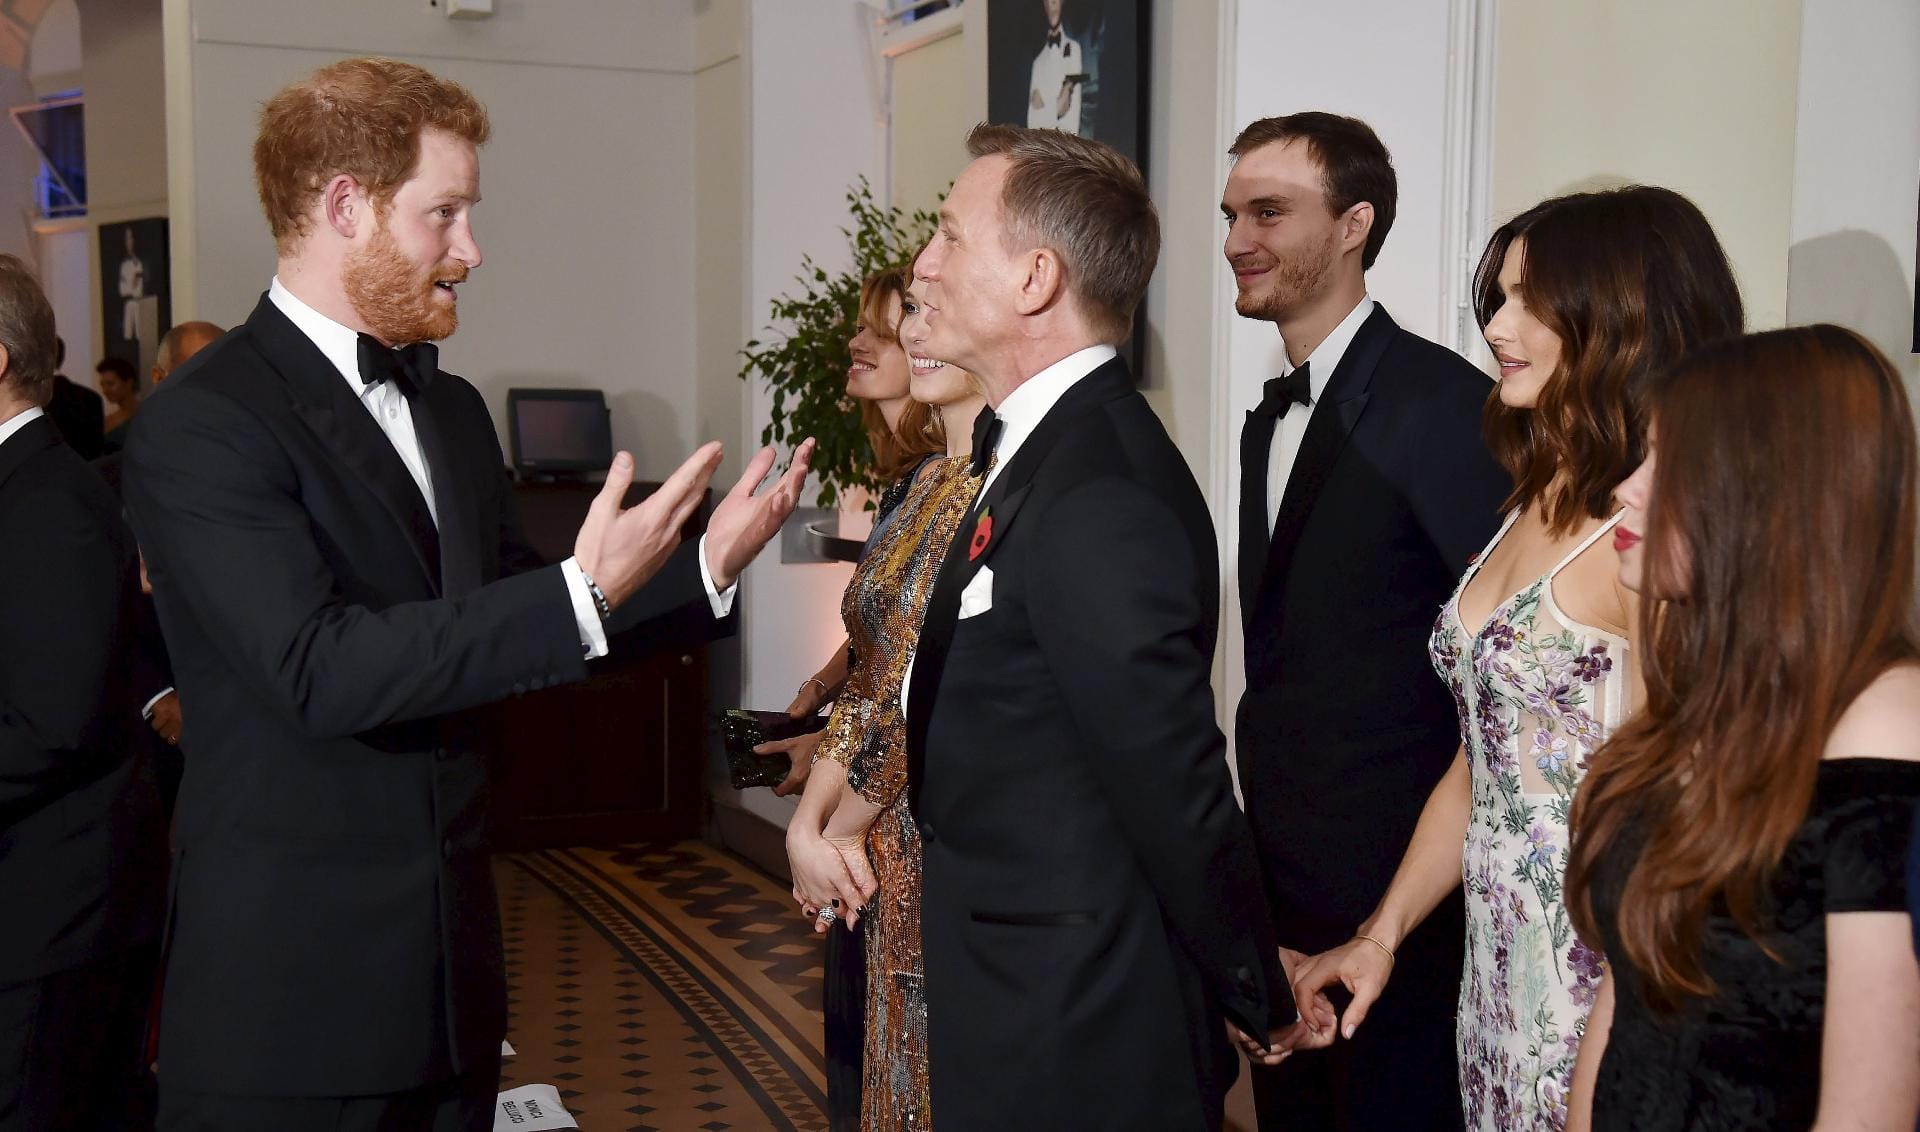 Auch Prinz Harry plauderte angeregt mit Craig. Ob sie ausdiskutierten, wer von beiden den cooleren Smoking trägt?